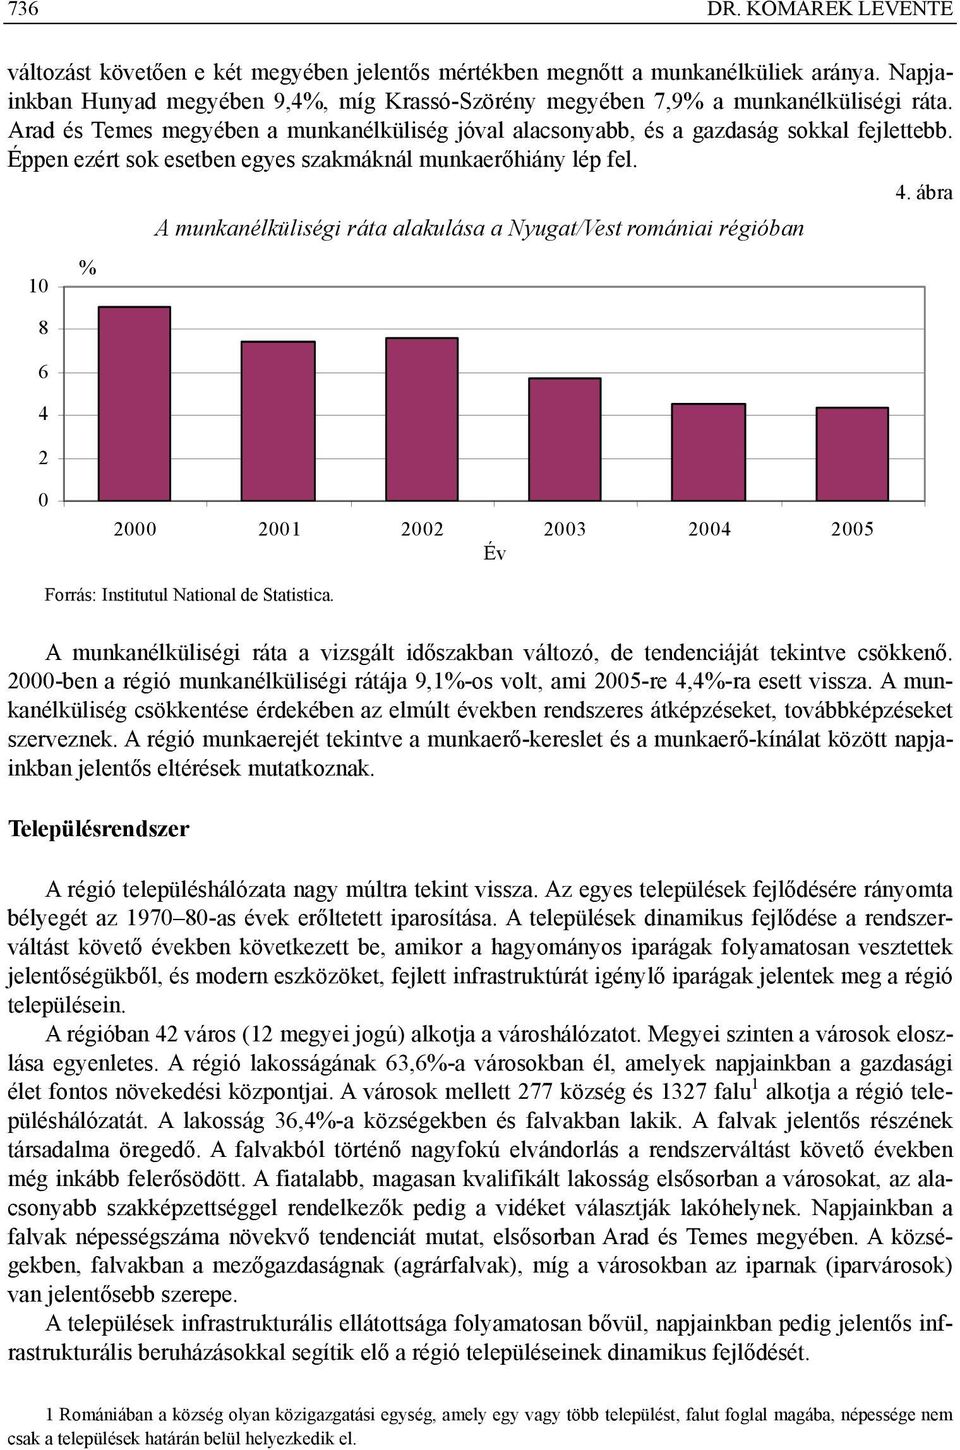 Éppen ezért sok esetben egyes szakmáknál munkaerőhiány lép fel. 10 8 6 4 2 % A munkanélküliségi ráta alakulása a Nyugat/Vest romániai régióban 4.